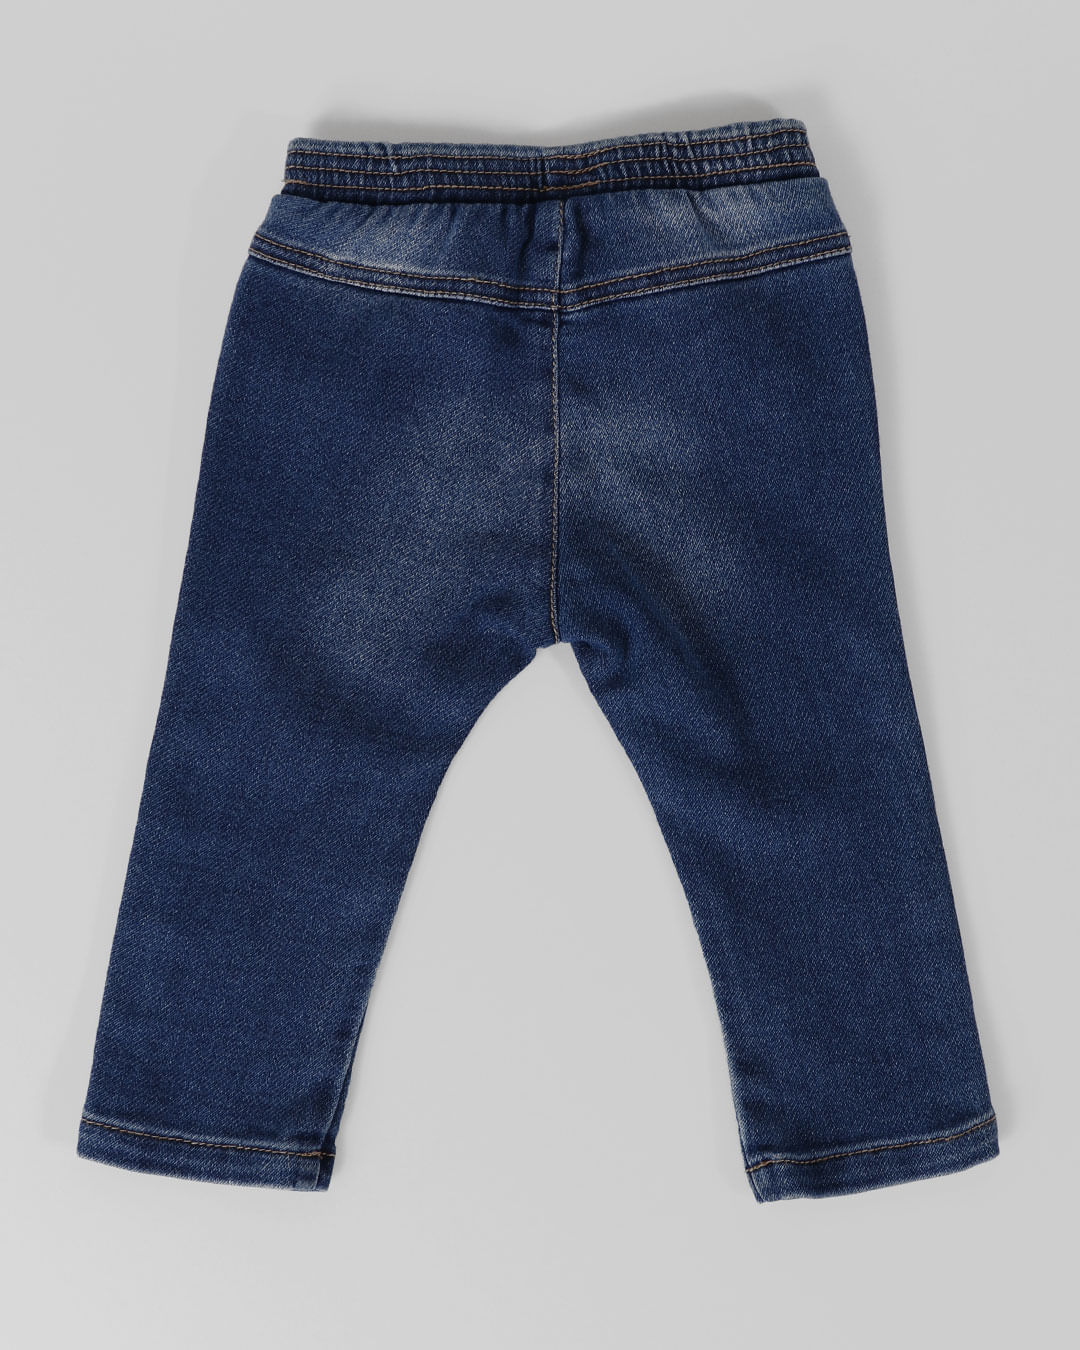 Calca-Jeans-Bebe-Lacinhos-Onca-Azul